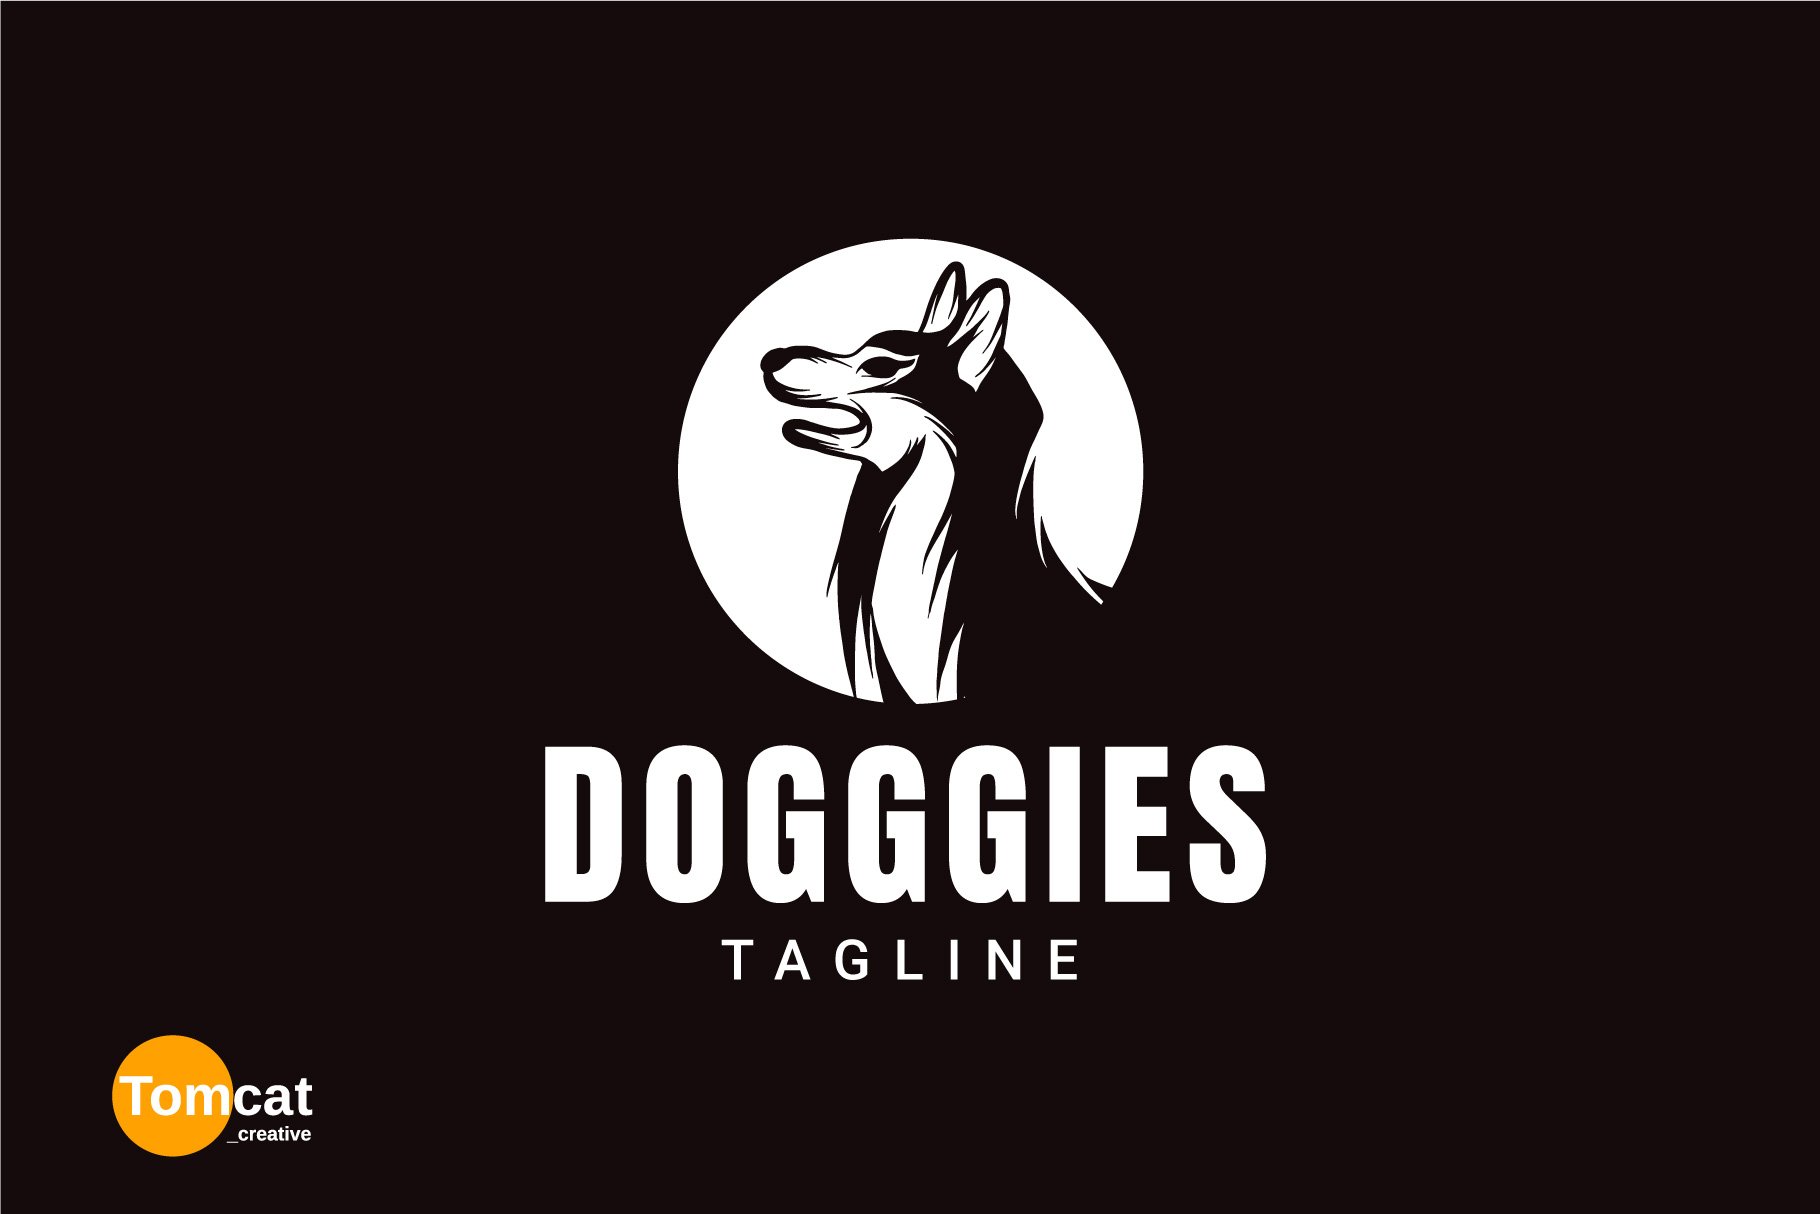 Dog Emblem Logo Design cover image.